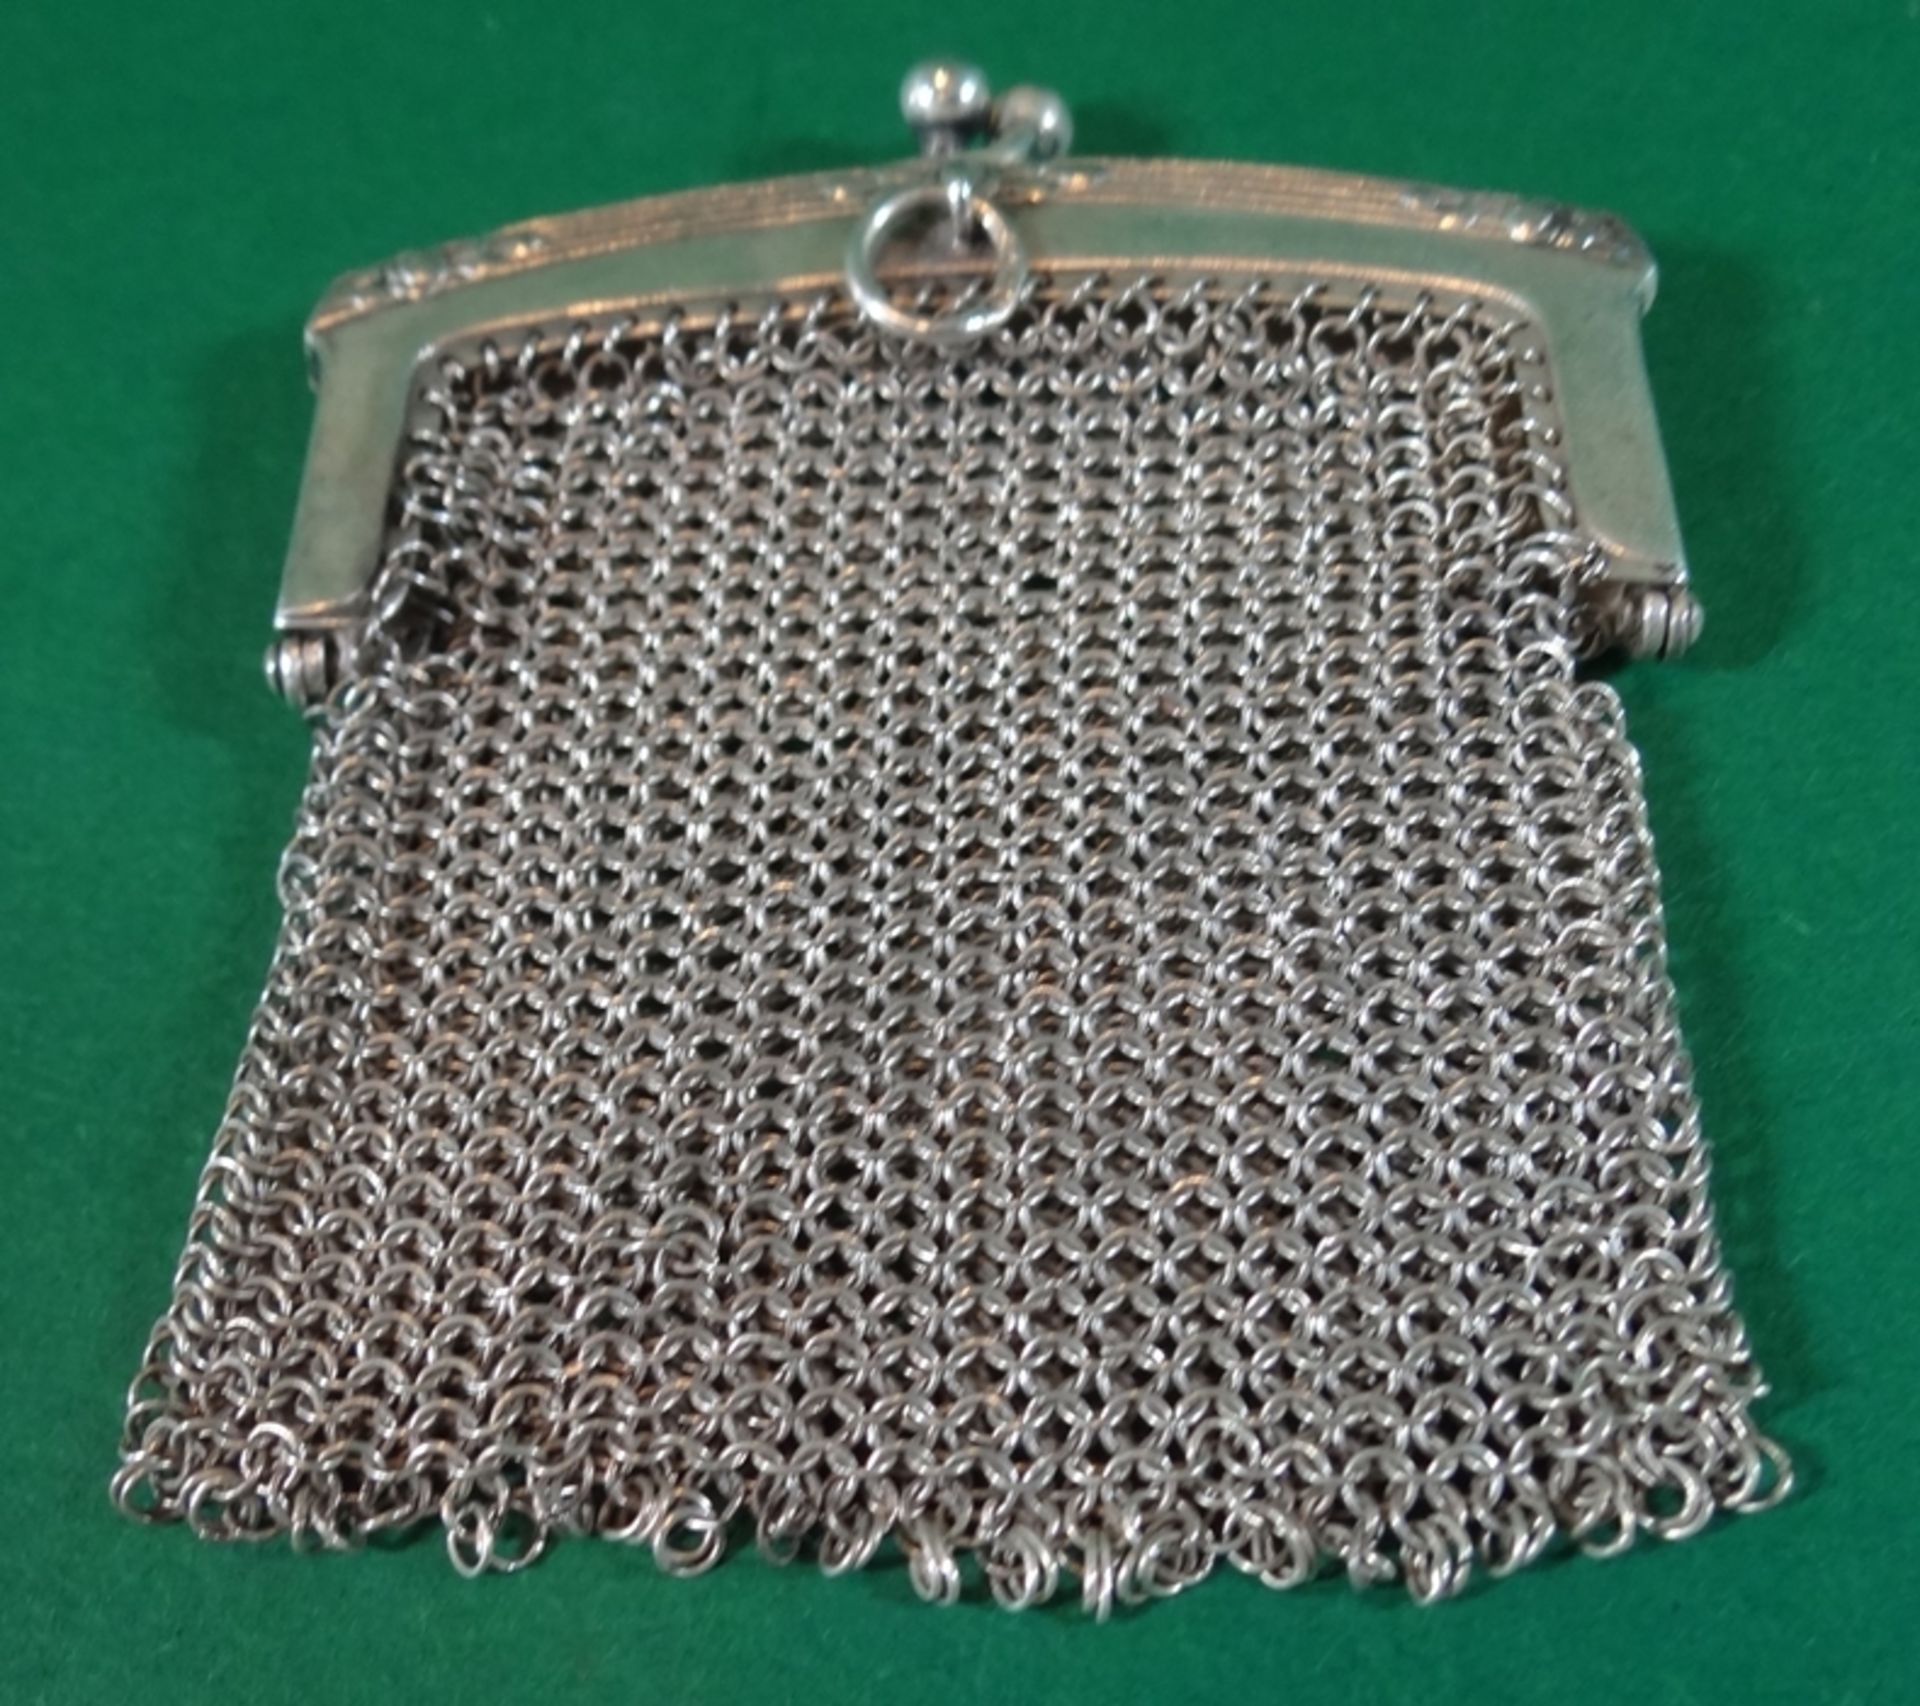 Kleingeld-Beutel aus Silberdraht, leicht beschädigt, Silber geprüft, 7x6 cm, 31 gr. - Image 2 of 3